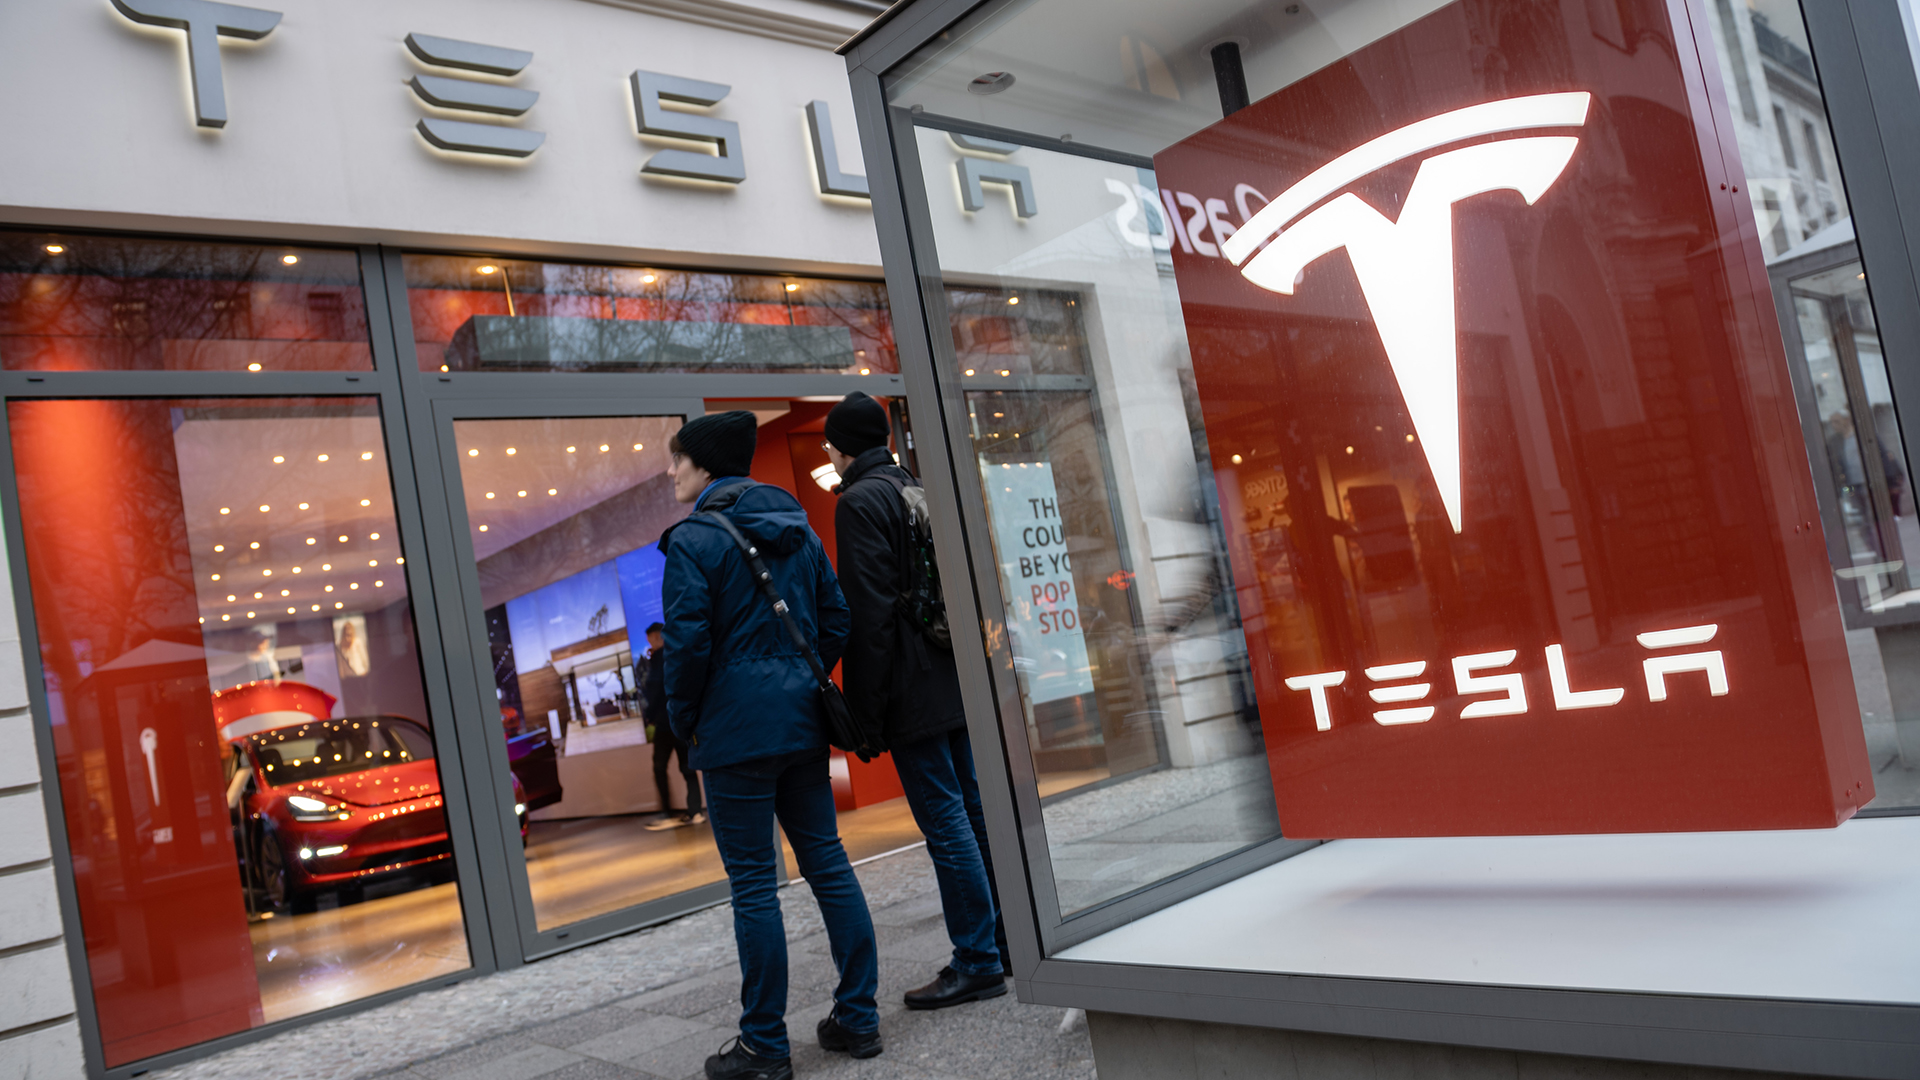 Neuwagen von Tesla stehen in einem Showroom in Berlin | JENS SCHLUETER/EPA-EFE/Shutterst